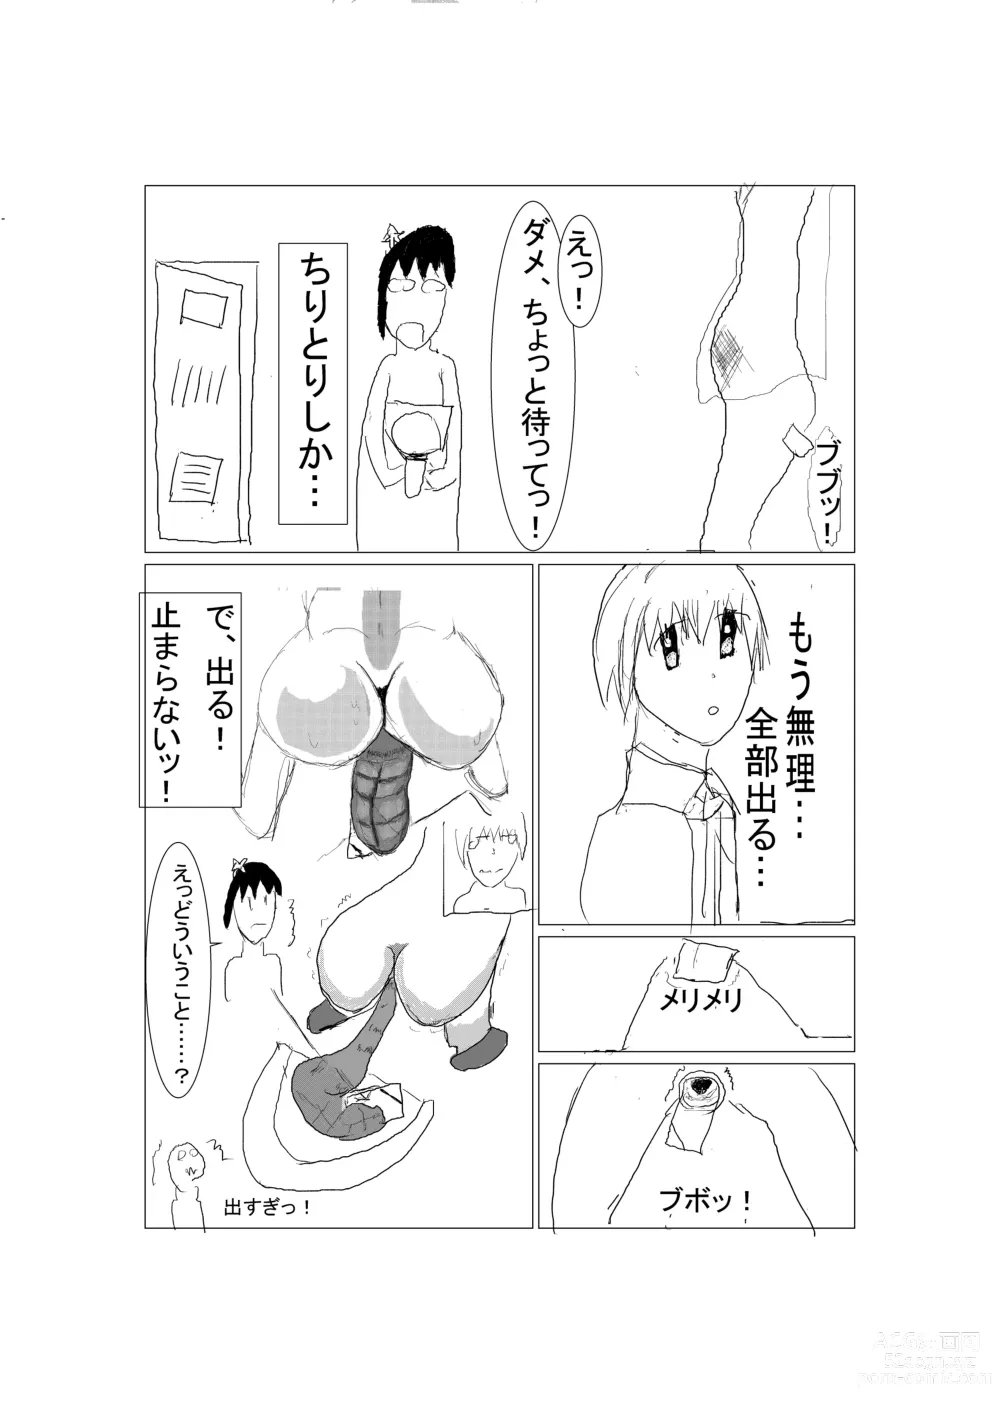 Page 6 of doujinshi Touheki Shoujo no Junan